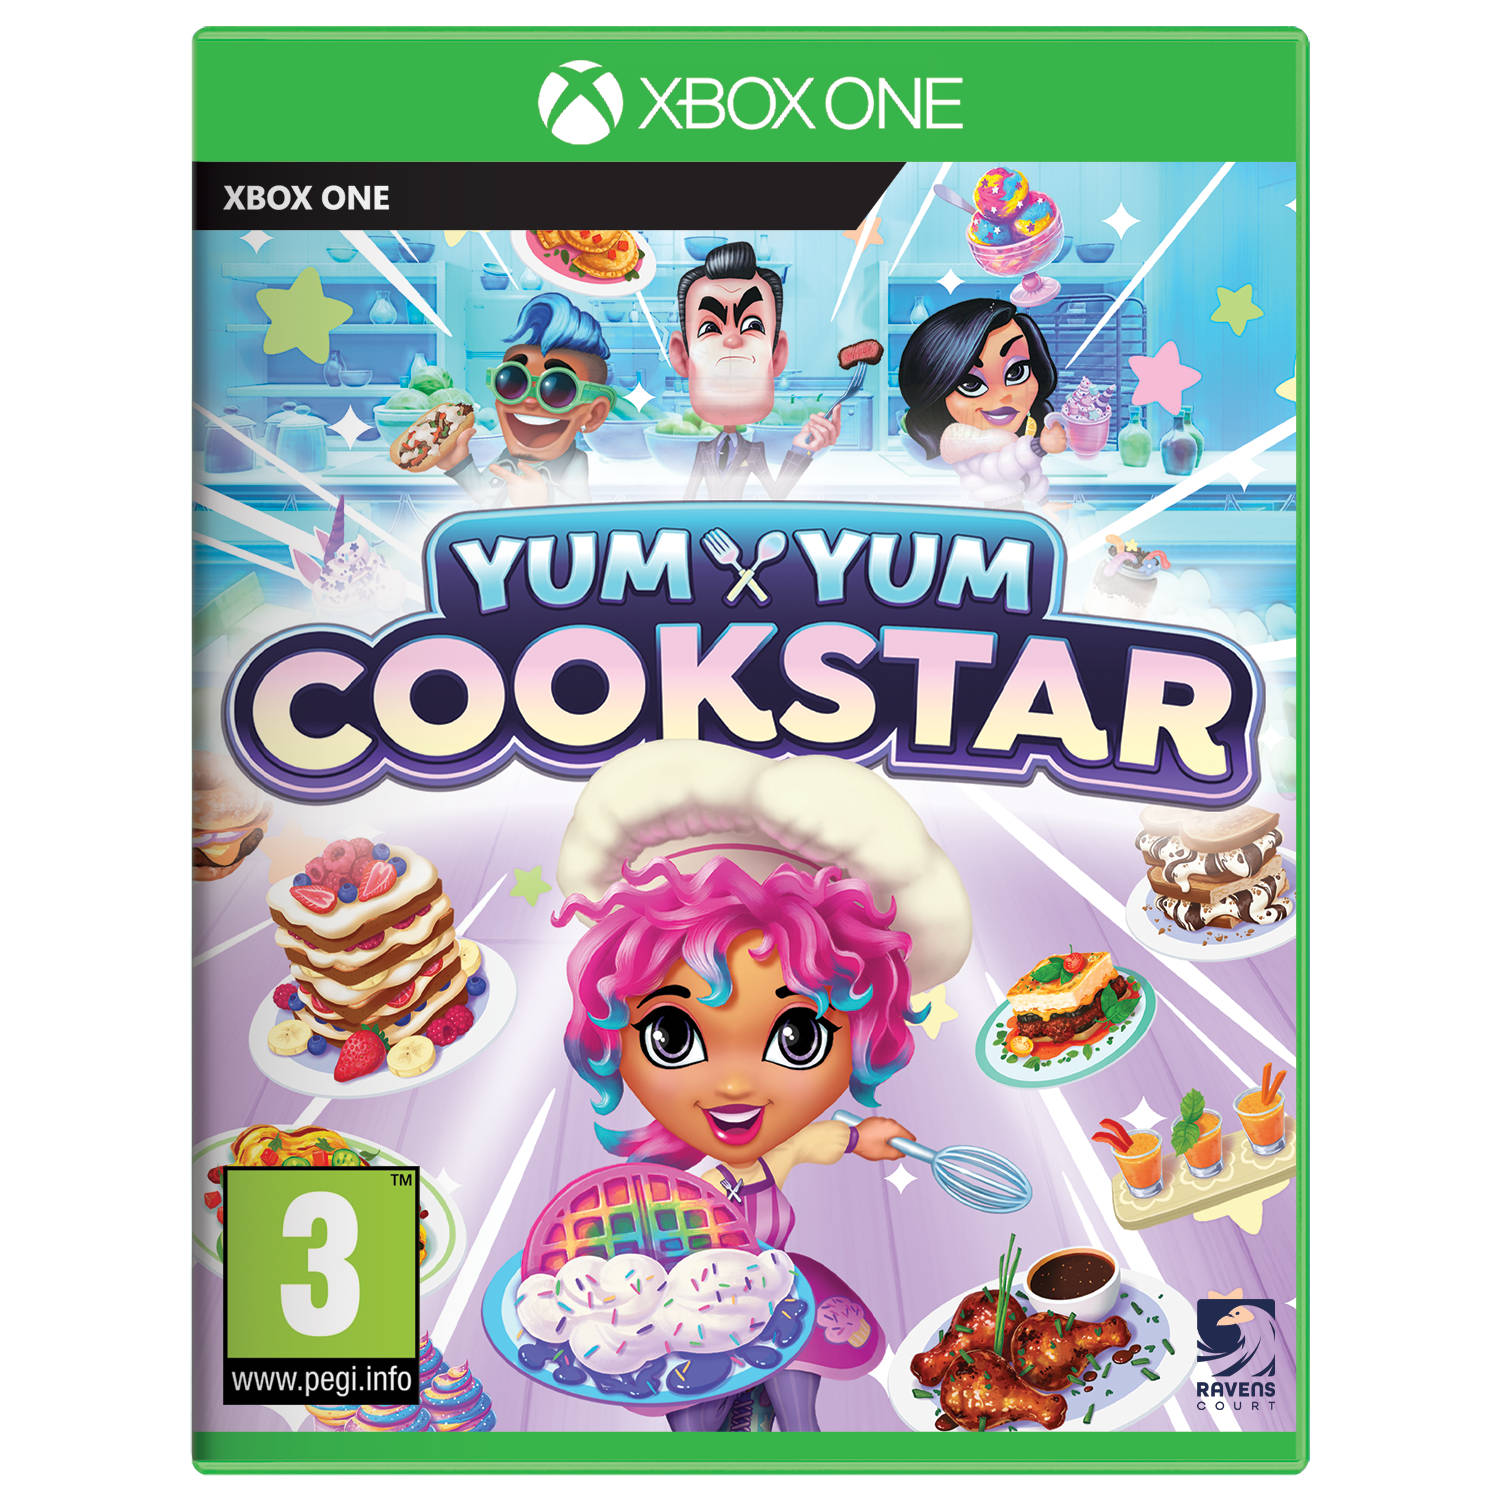 Yum Yum Cookstar Xbox One